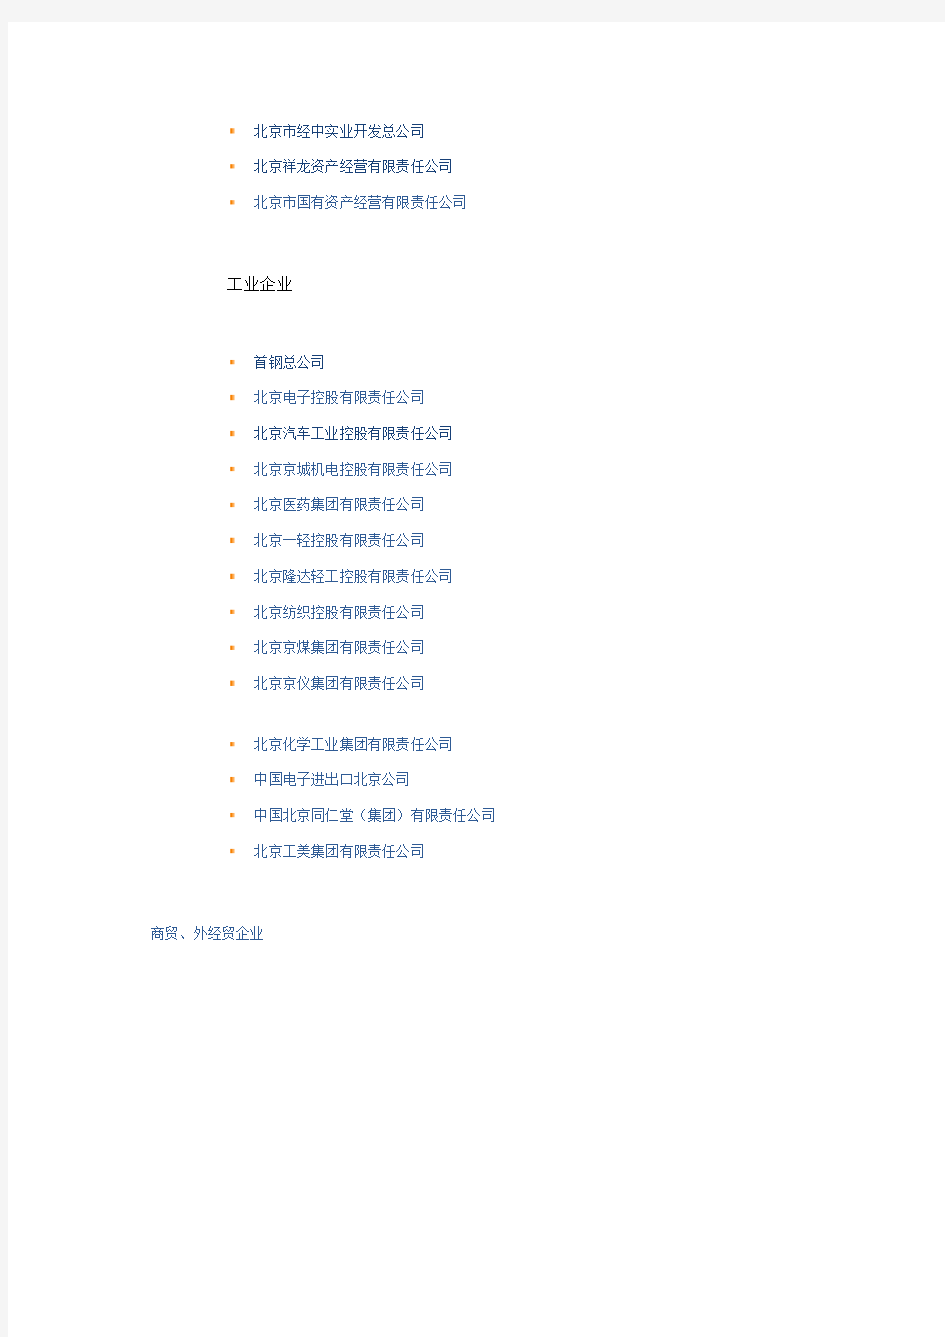 北京市国资委下属企业名单